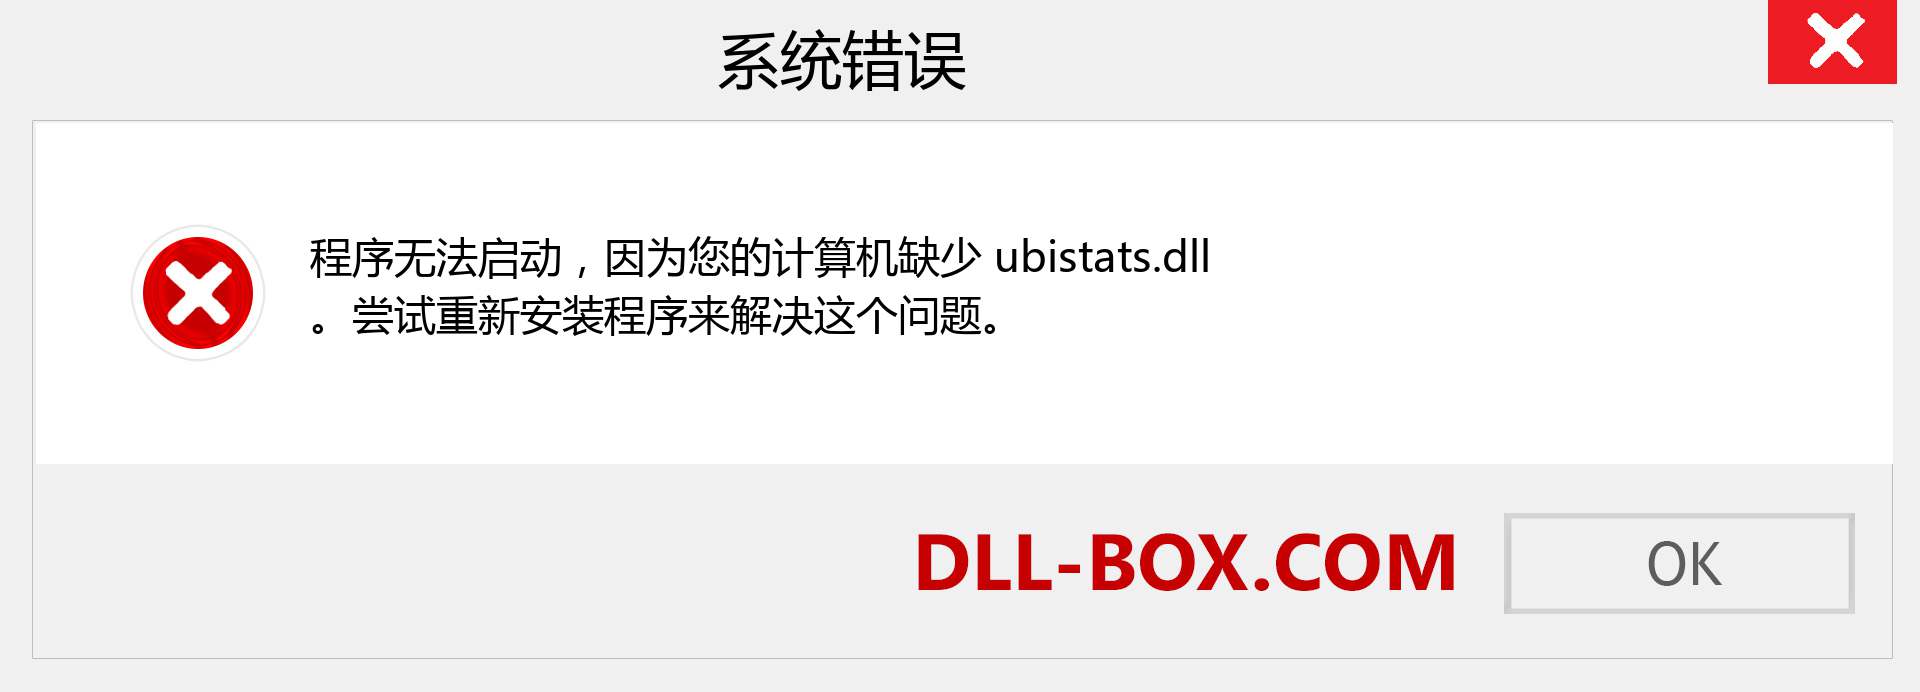 ubistats.dll 文件丢失？。 适用于 Windows 7、8、10 的下载 - 修复 Windows、照片、图像上的 ubistats dll 丢失错误